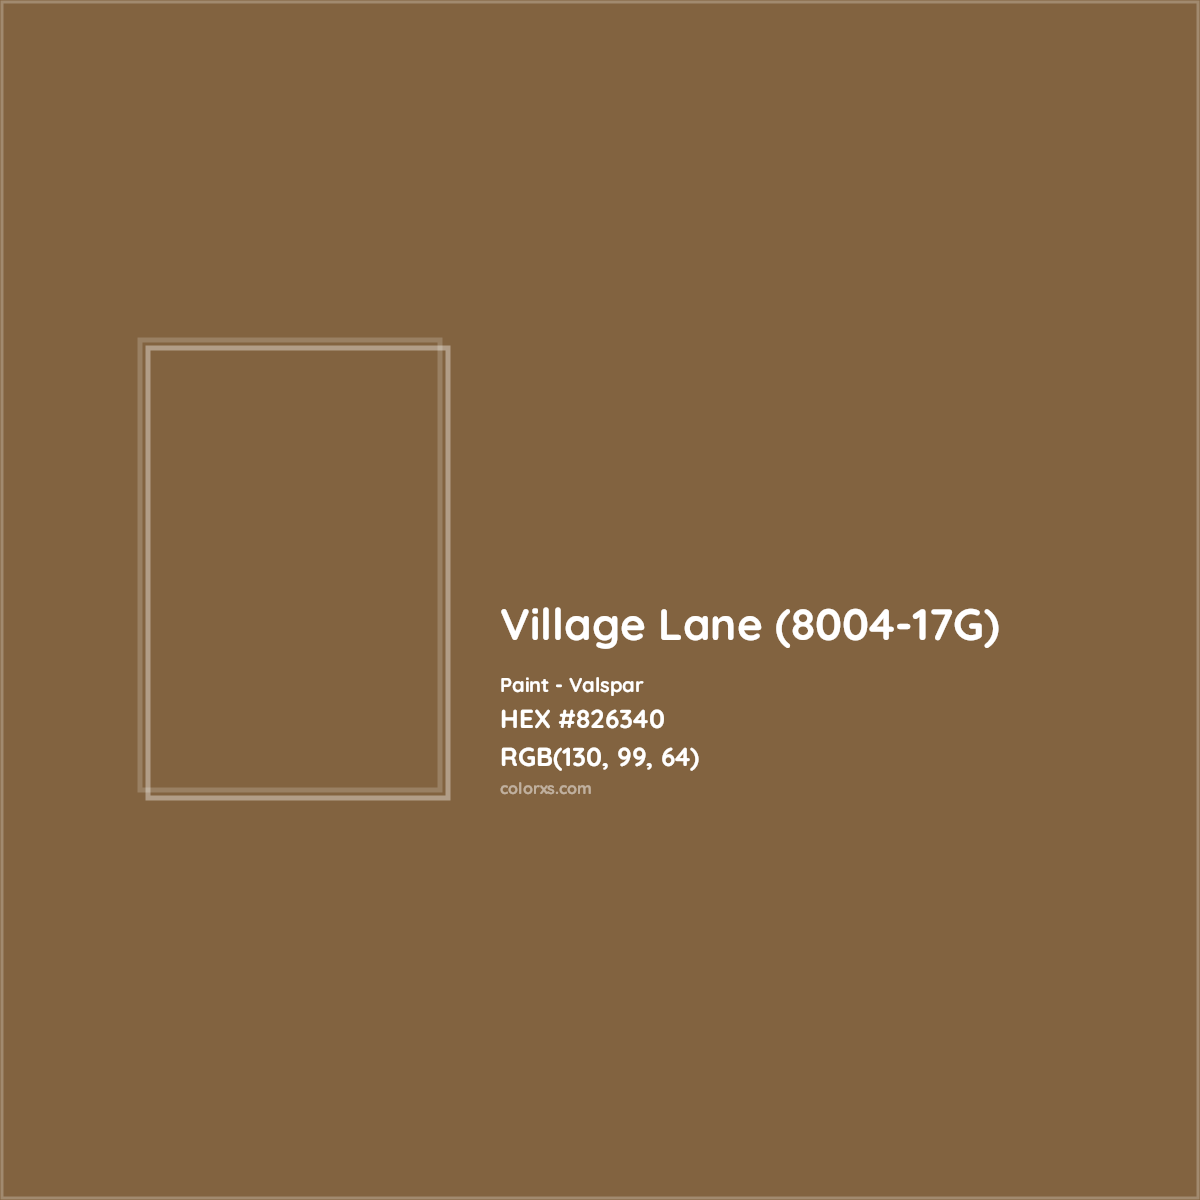 HEX #826340 Village Lane (8004-17G) Paint Valspar - Color Code